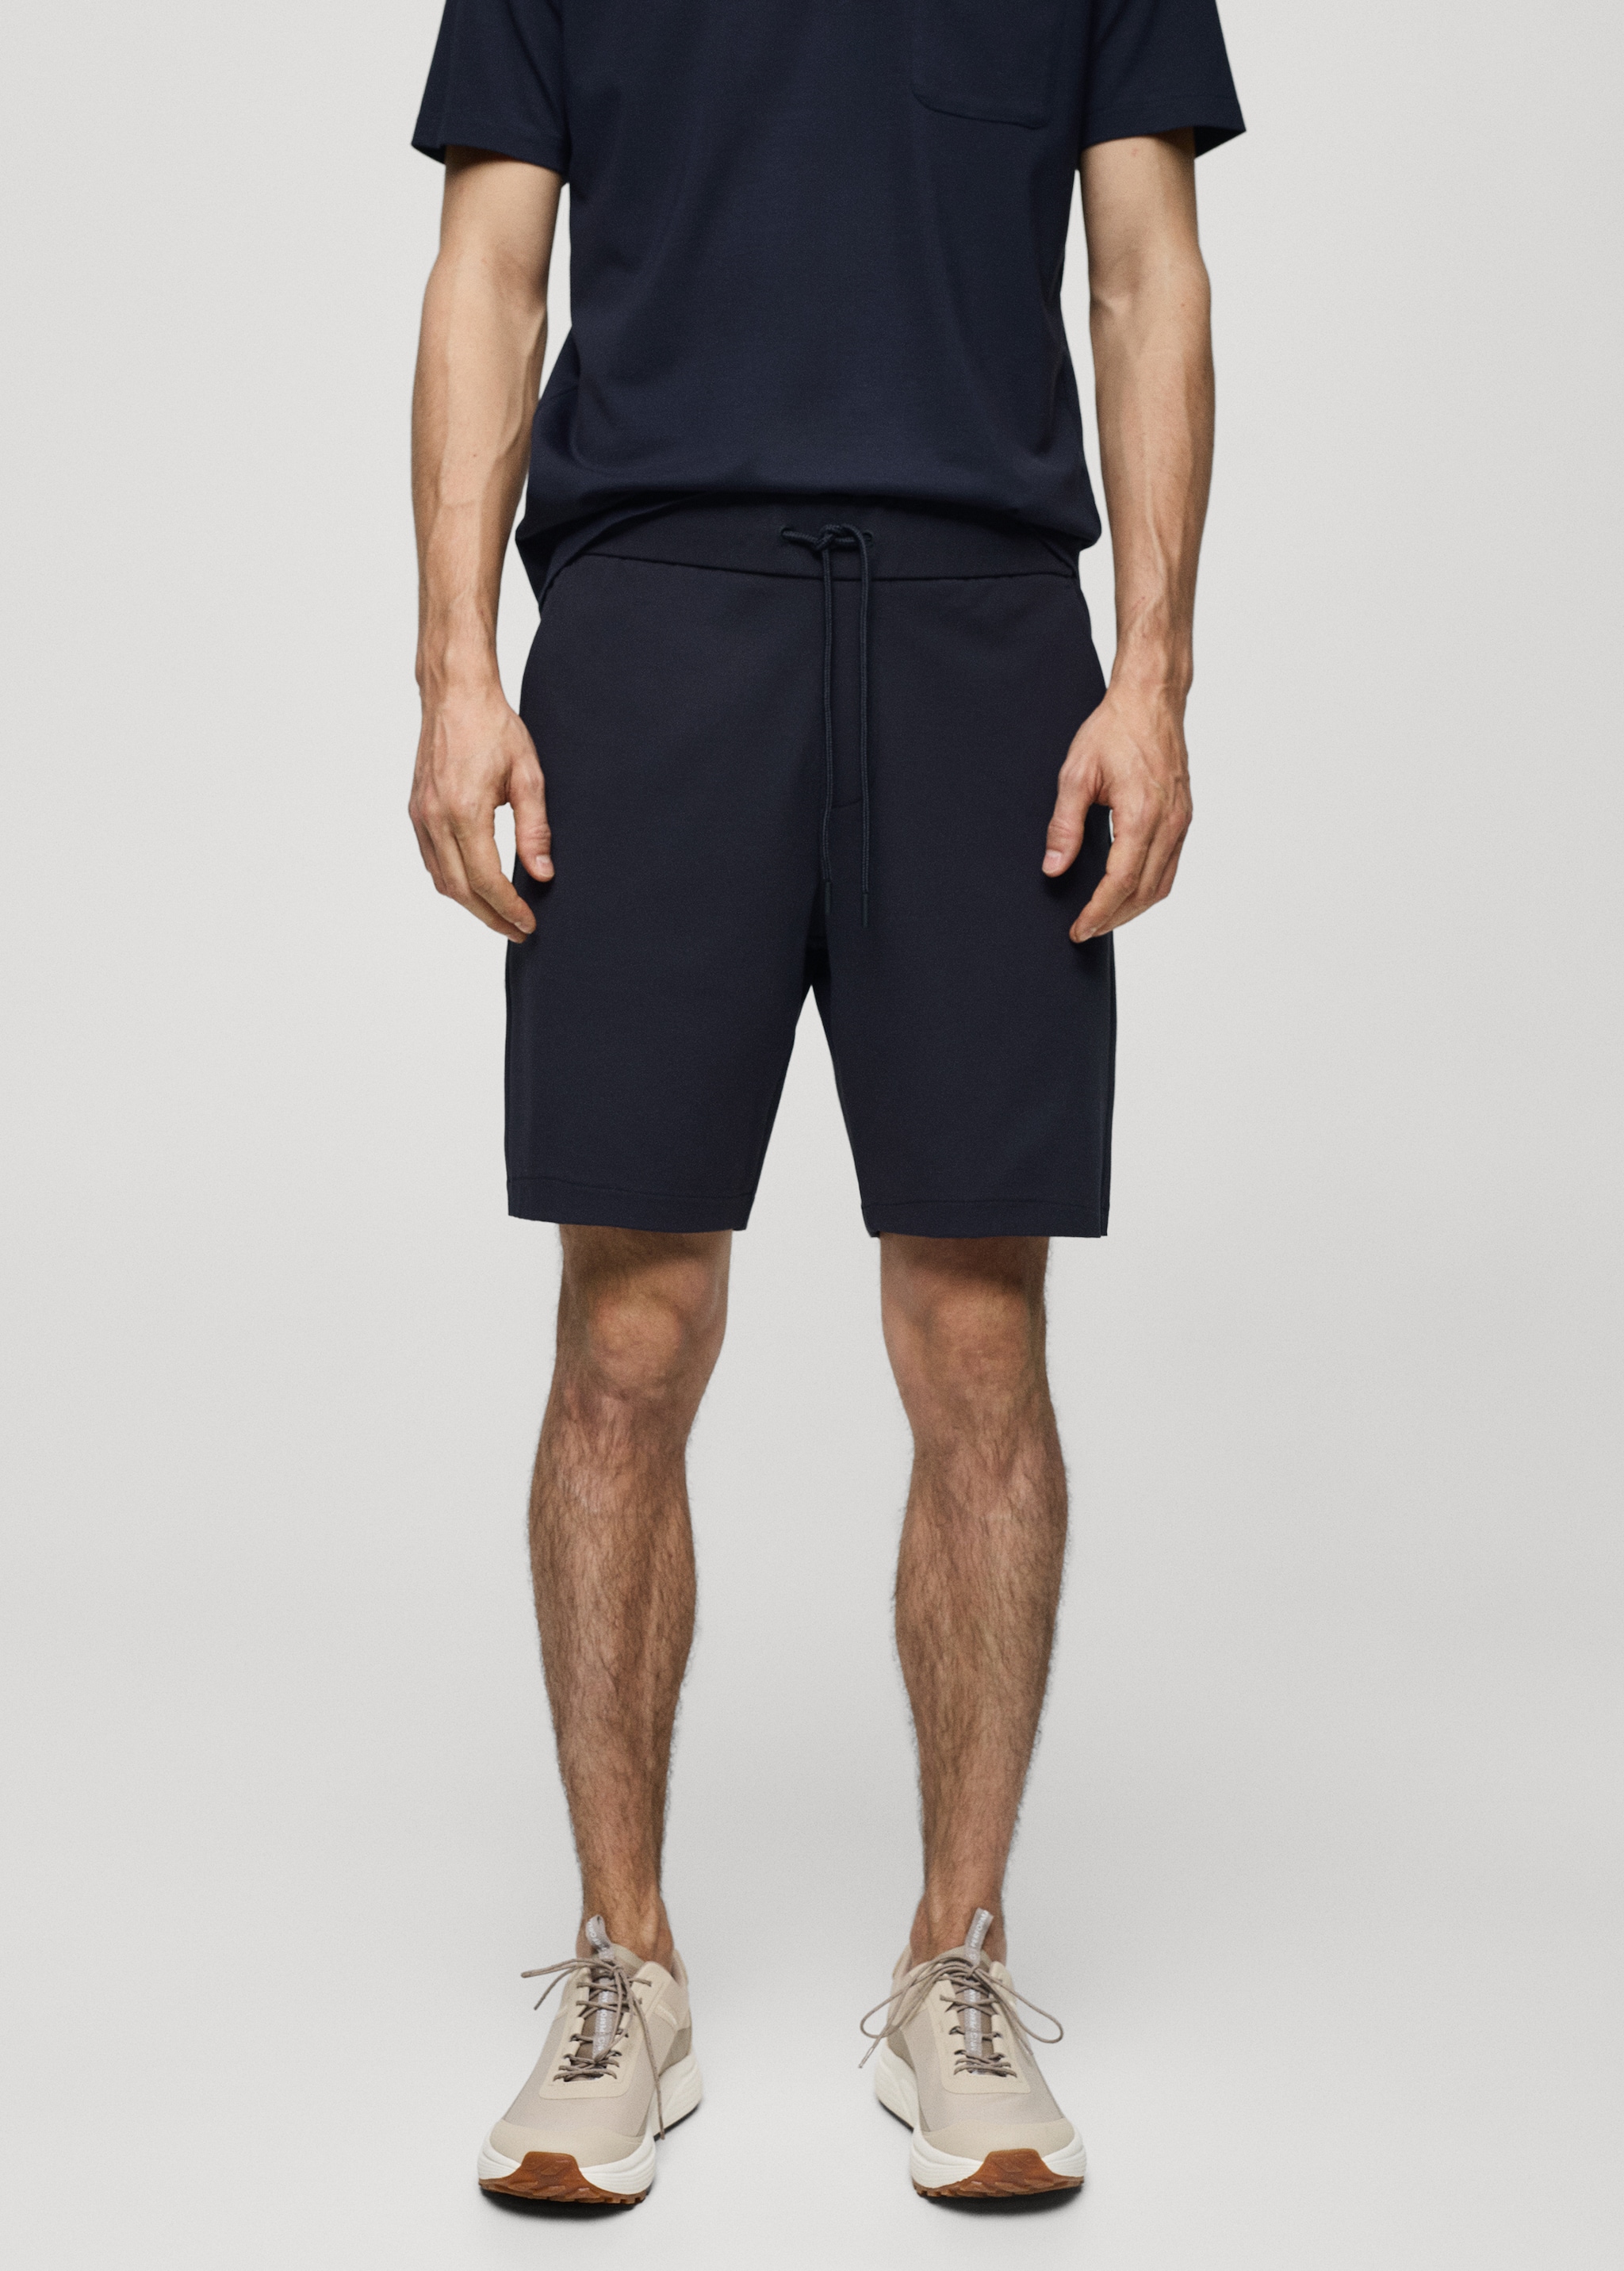 Technical fabric drawstring Bermuda shorts - Medium plane